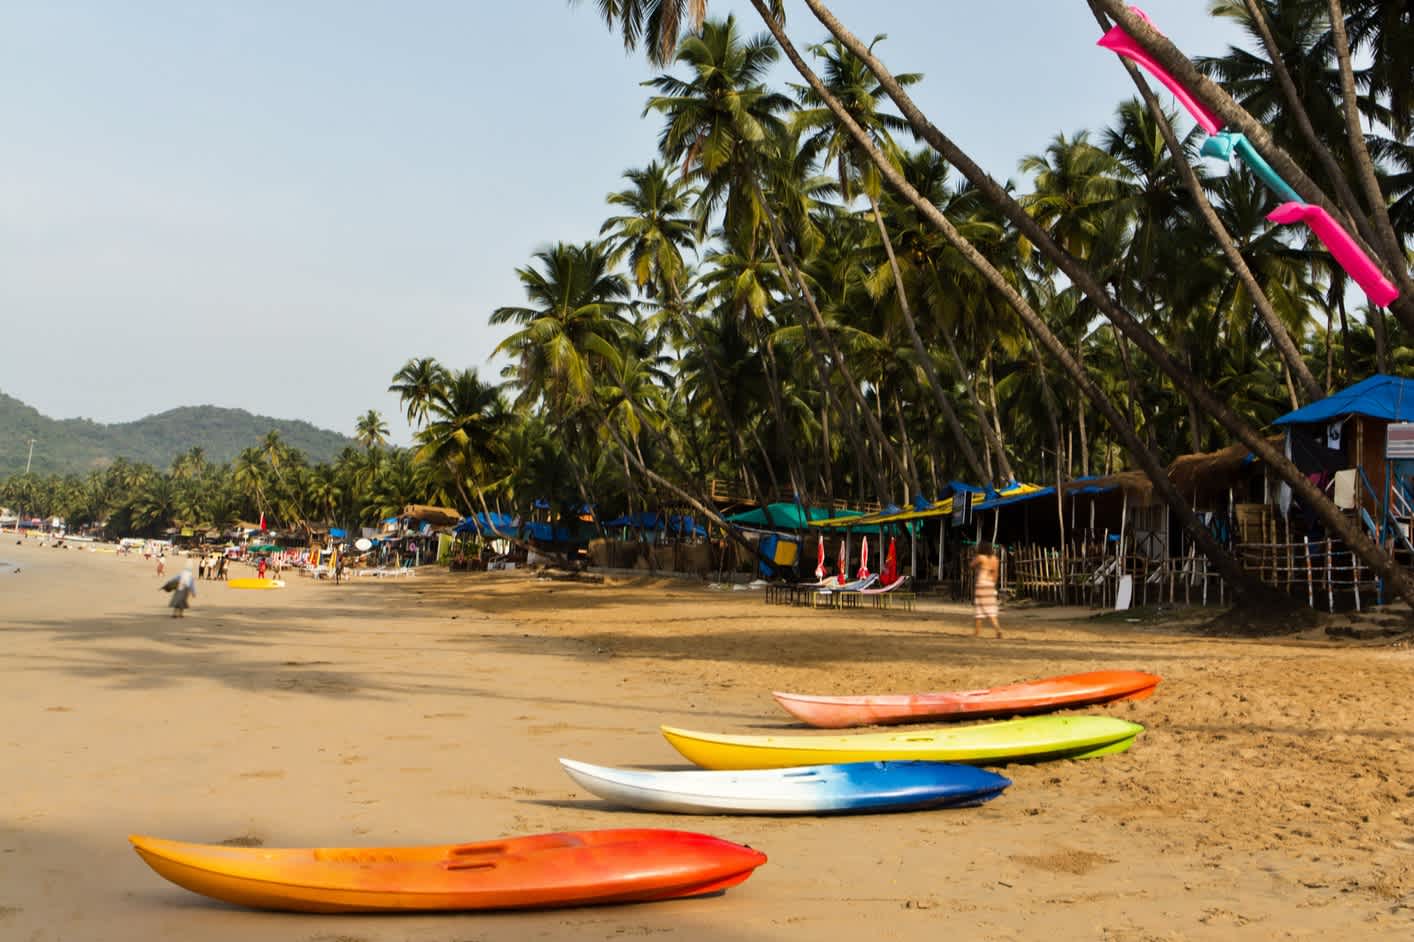 Sud de l'Inde, planches de surf étendues sur la plage.